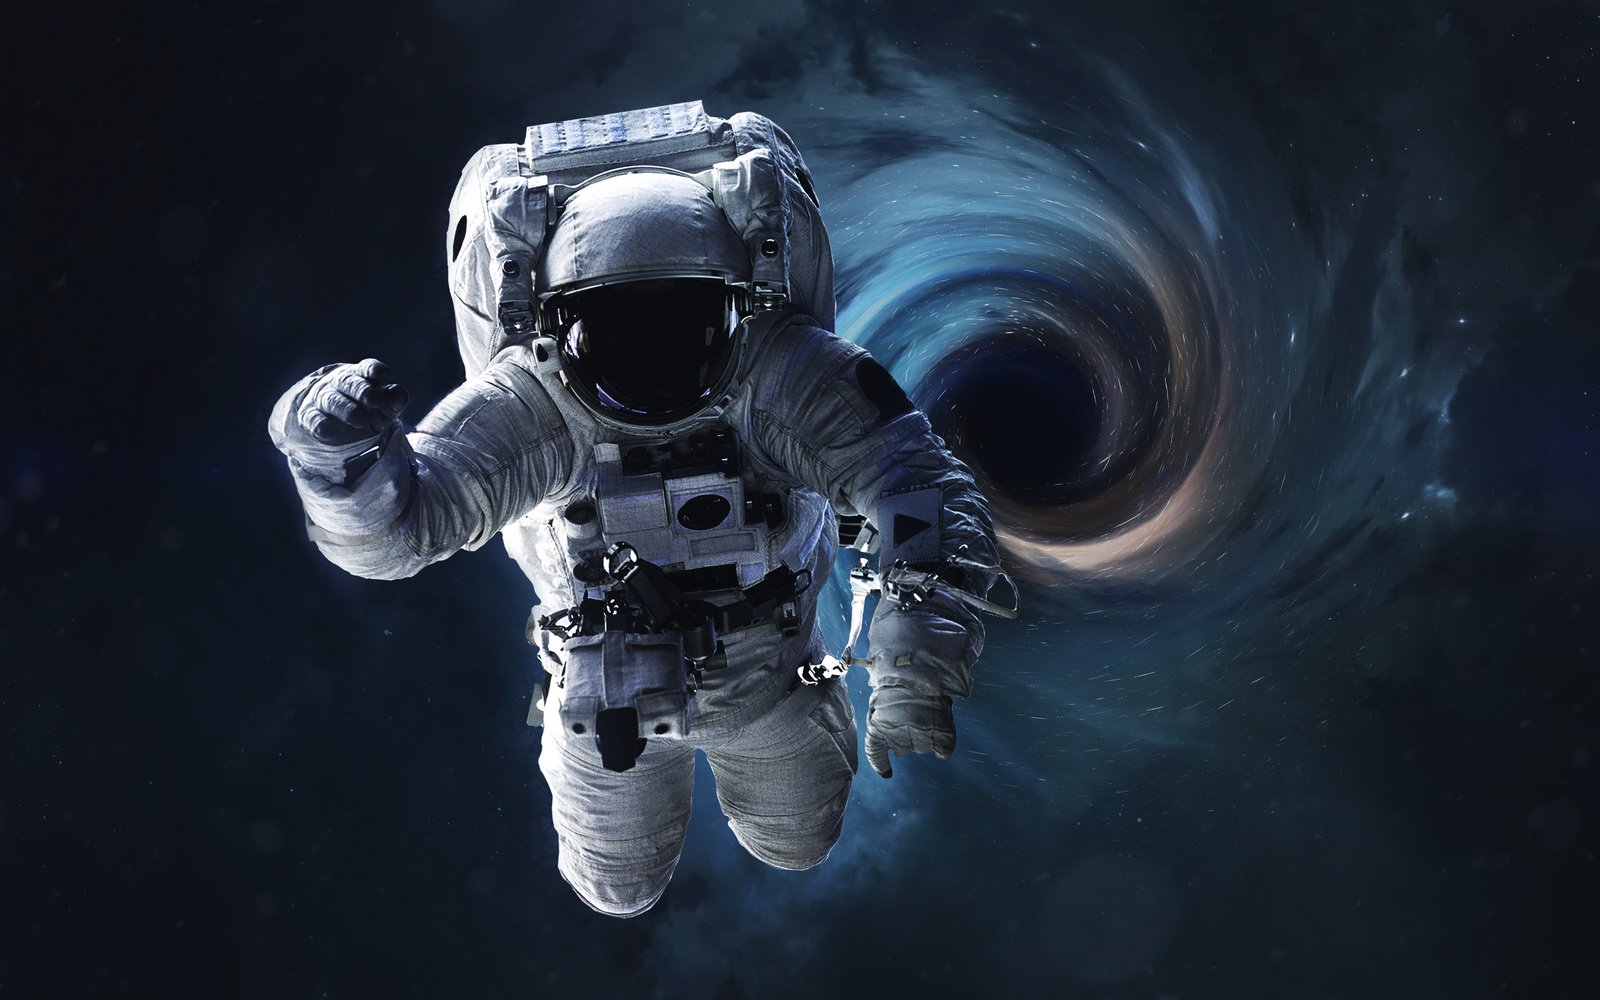 Os cientistas: Use o buraco negro para a viagem espacial pode ser, mas só cuidado